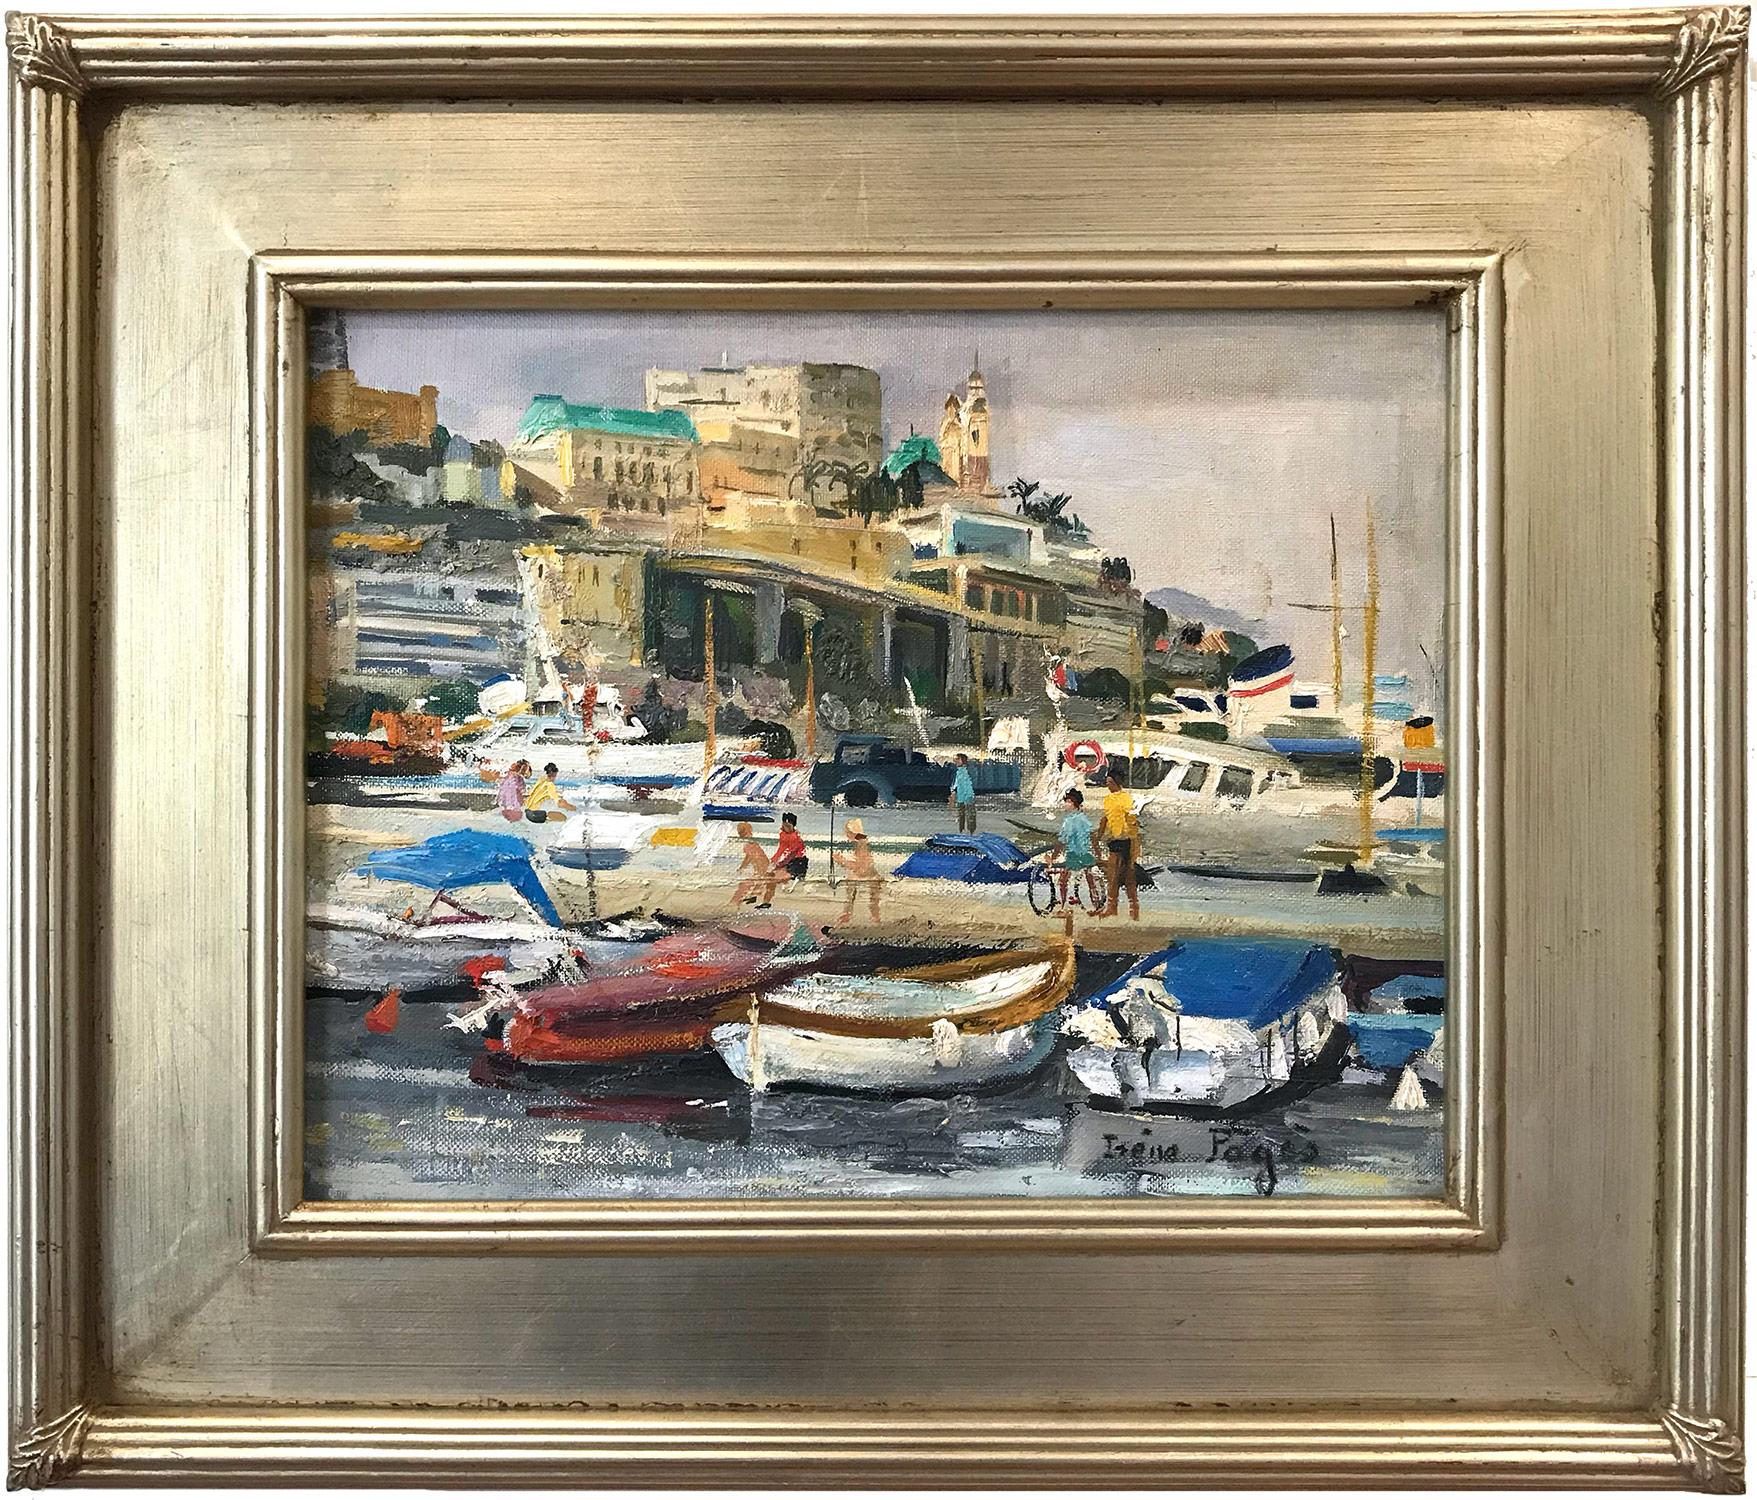 Irene Pages Landscape Painting - "Port De Monte-Carlo" Beachside Village Scene Impressionist Oil Canvas Painting